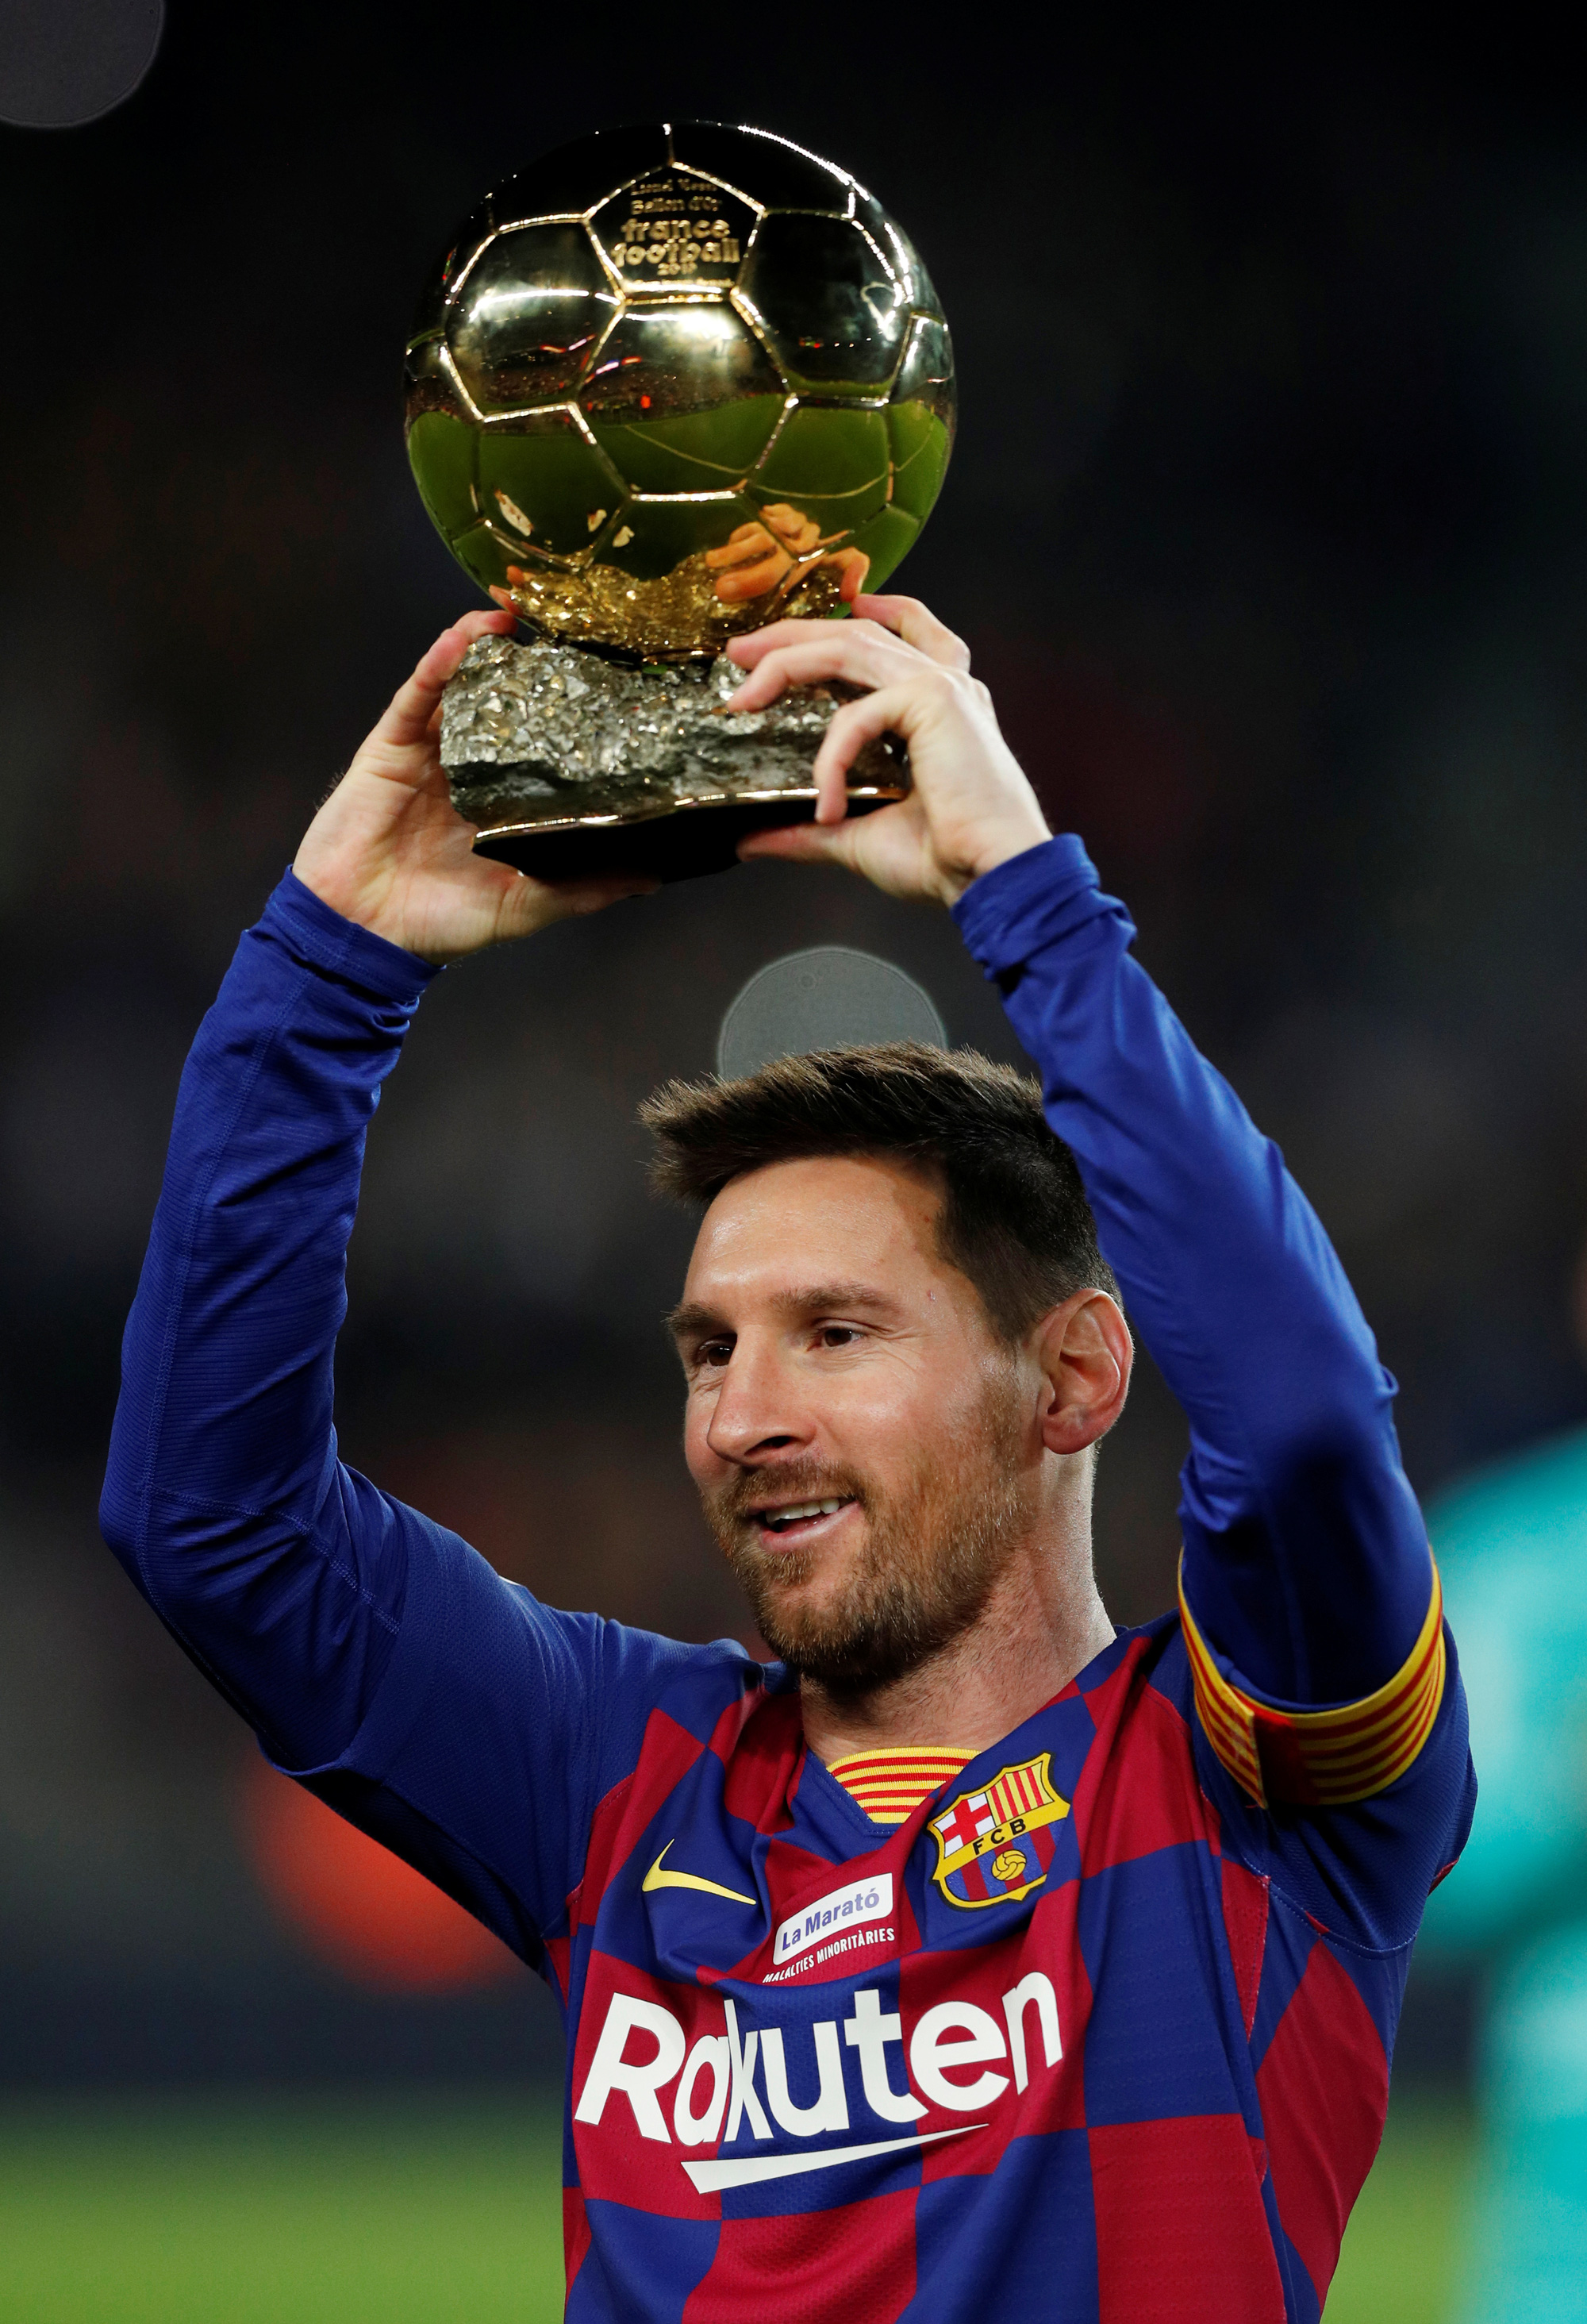 Cùng chiêm ngưỡng những pha lập công ngoạn mục của Messi trong cú hat-trick đình đám của anh trong trận đấu với đội bóng hàng đầu thế giới. Những pha ghi bàn đẹp mắt chắc chắn sẽ khiến bạn thích thú.